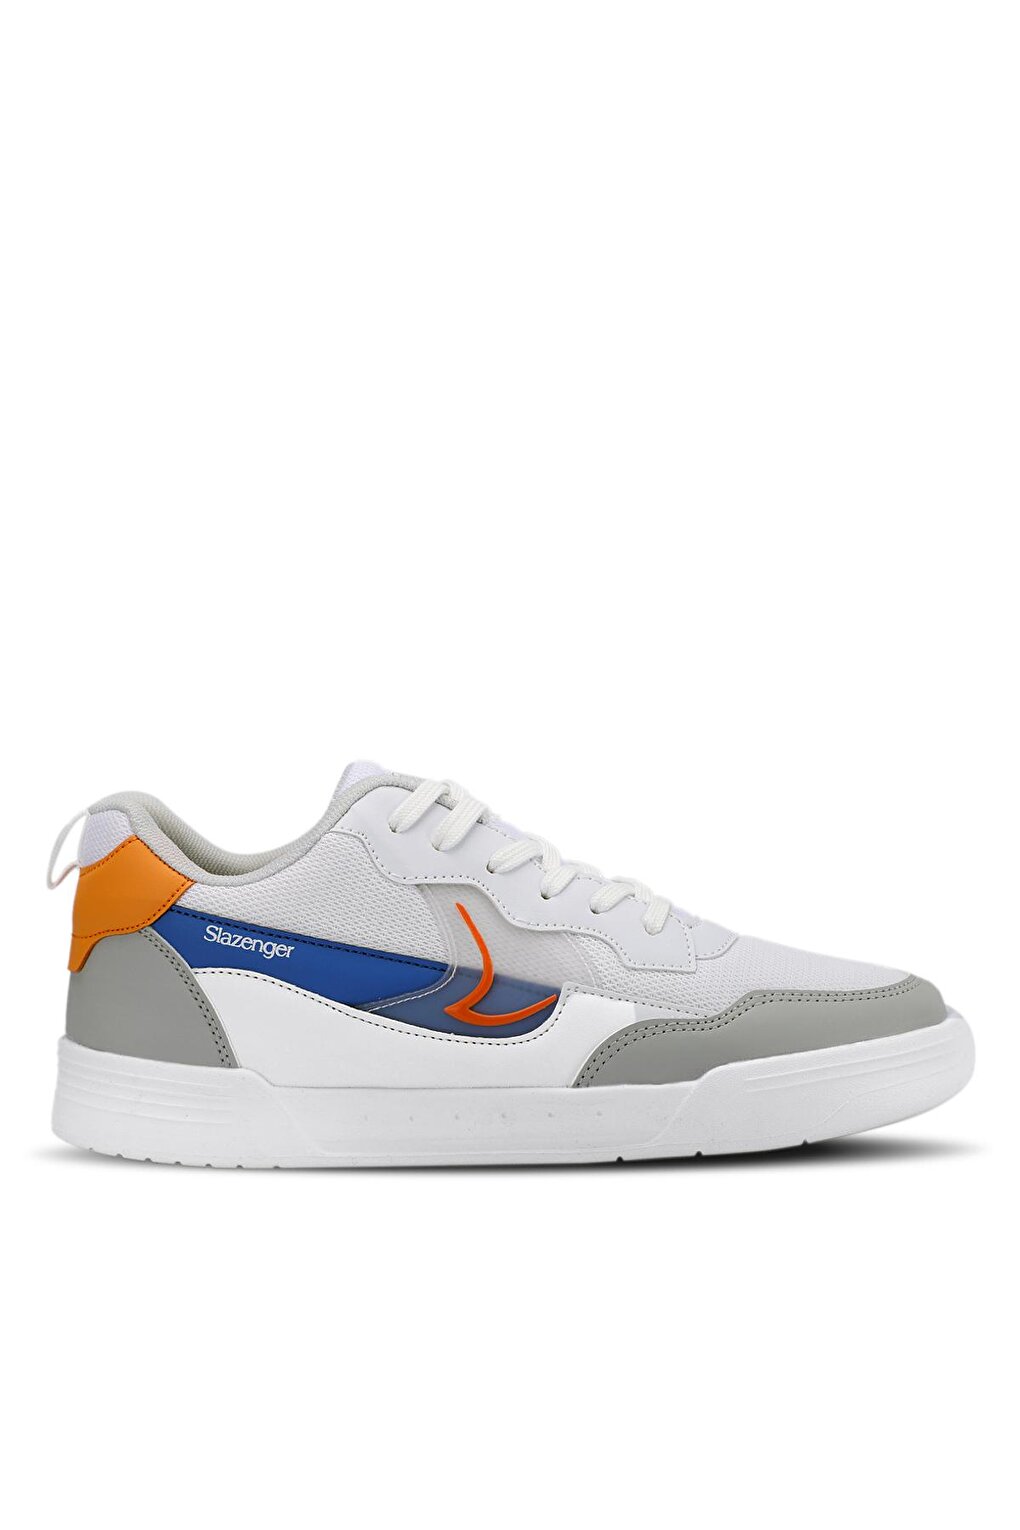 BARBRO Sneaker Мужская обувь Белый/Оранжевый SLAZENGER комплект мебели бело оранжевый